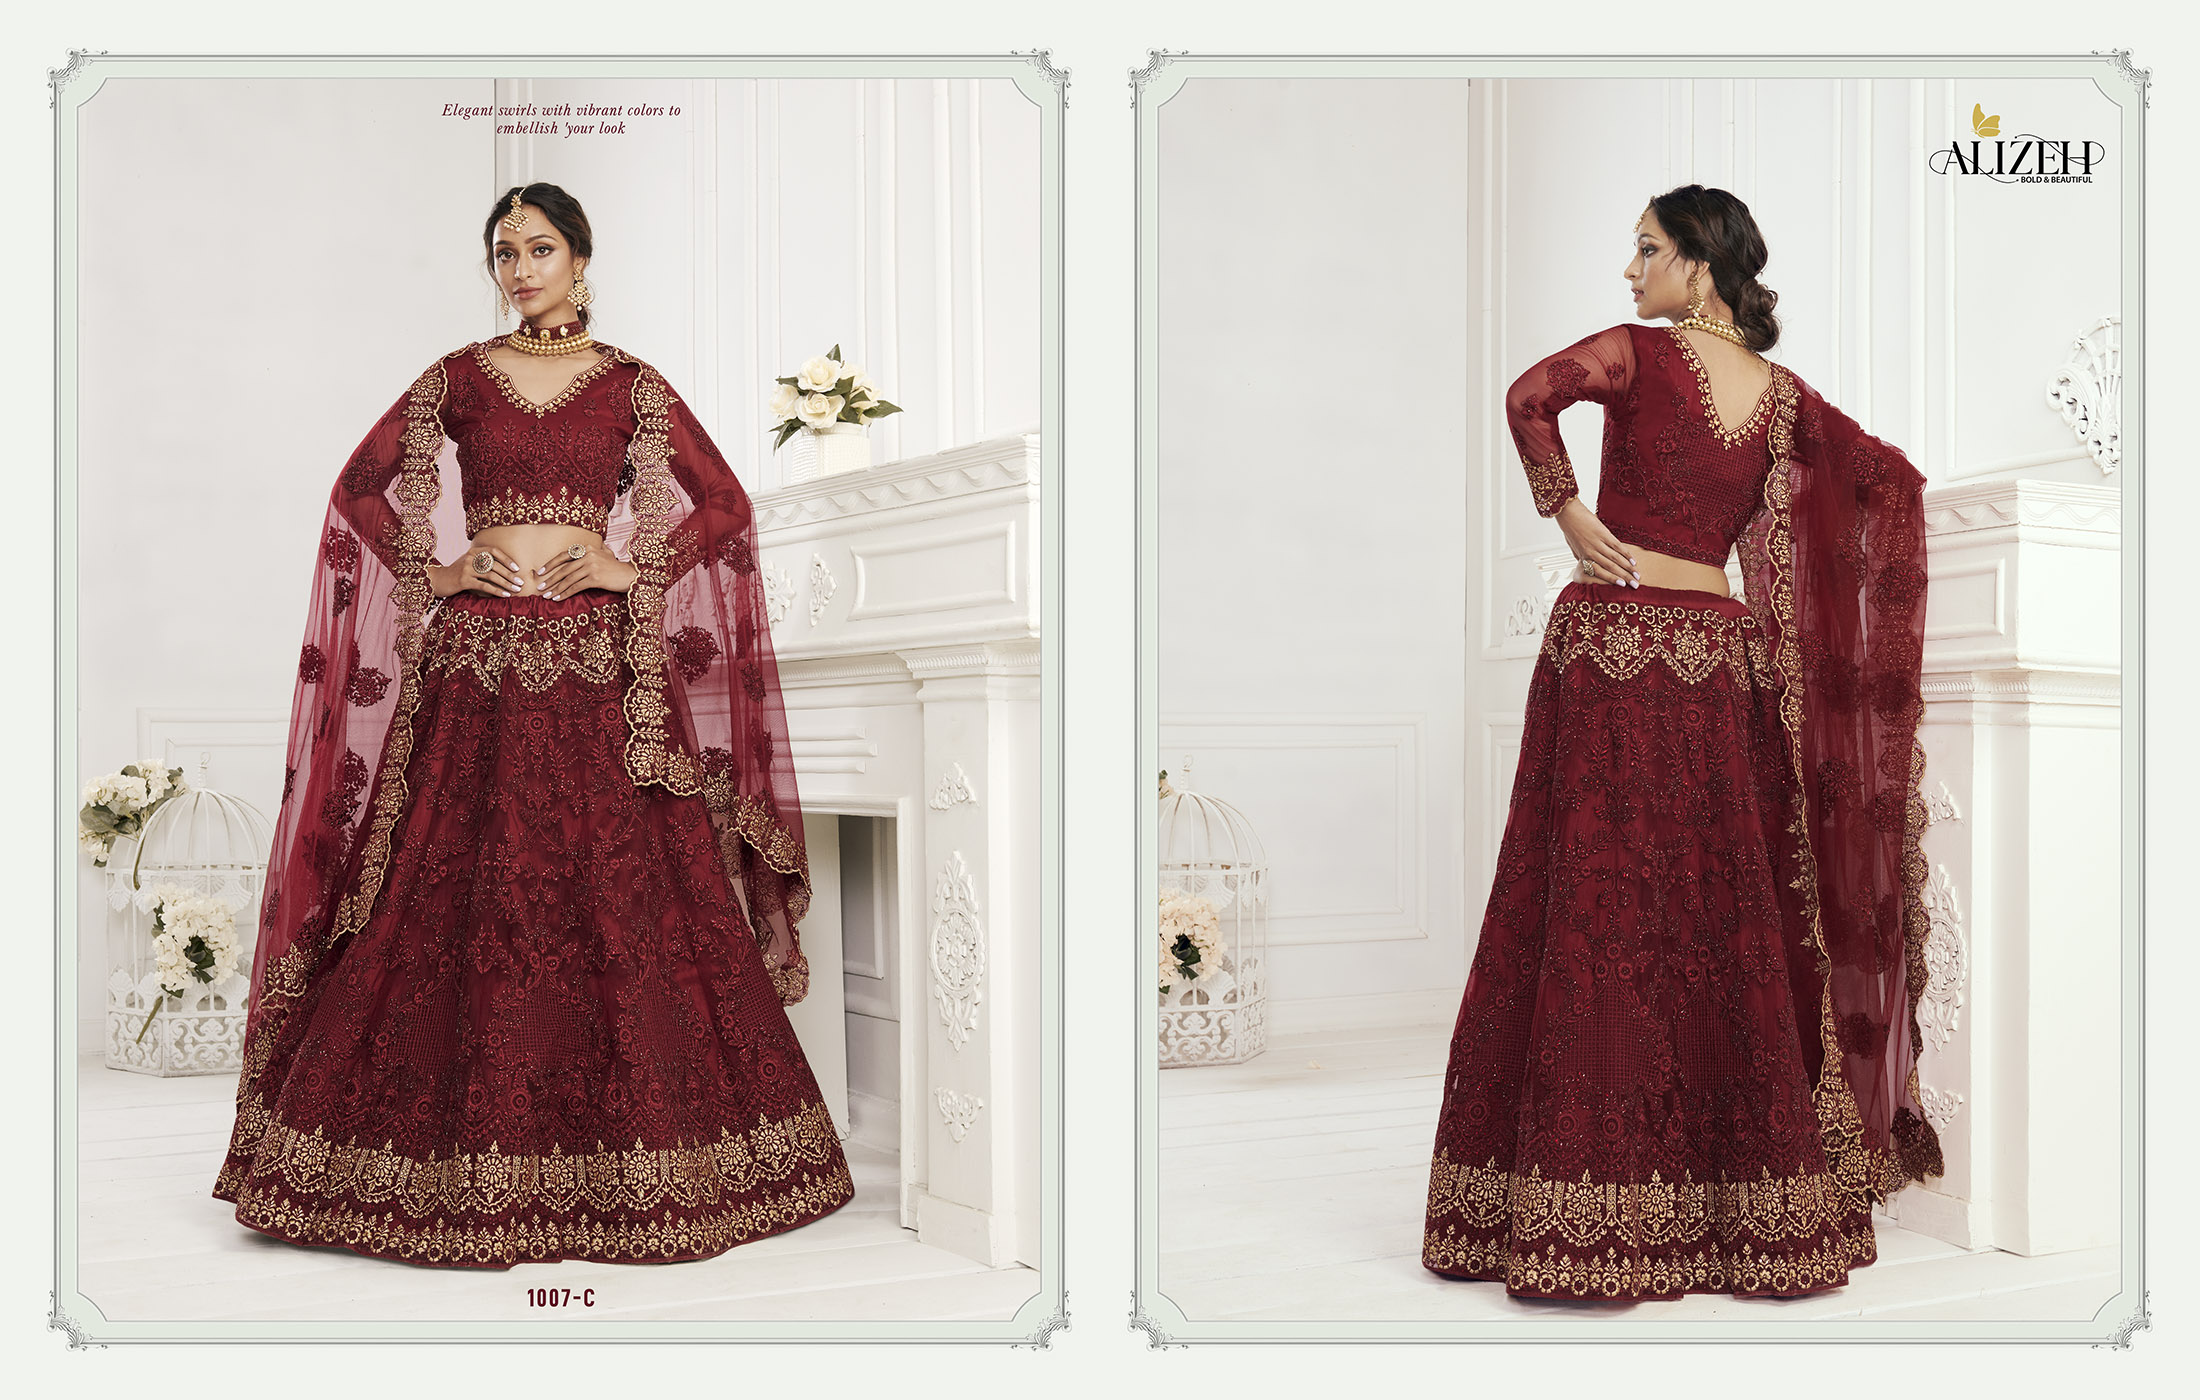 Alizeh Bridal Heritage Colour Saga 1007-C